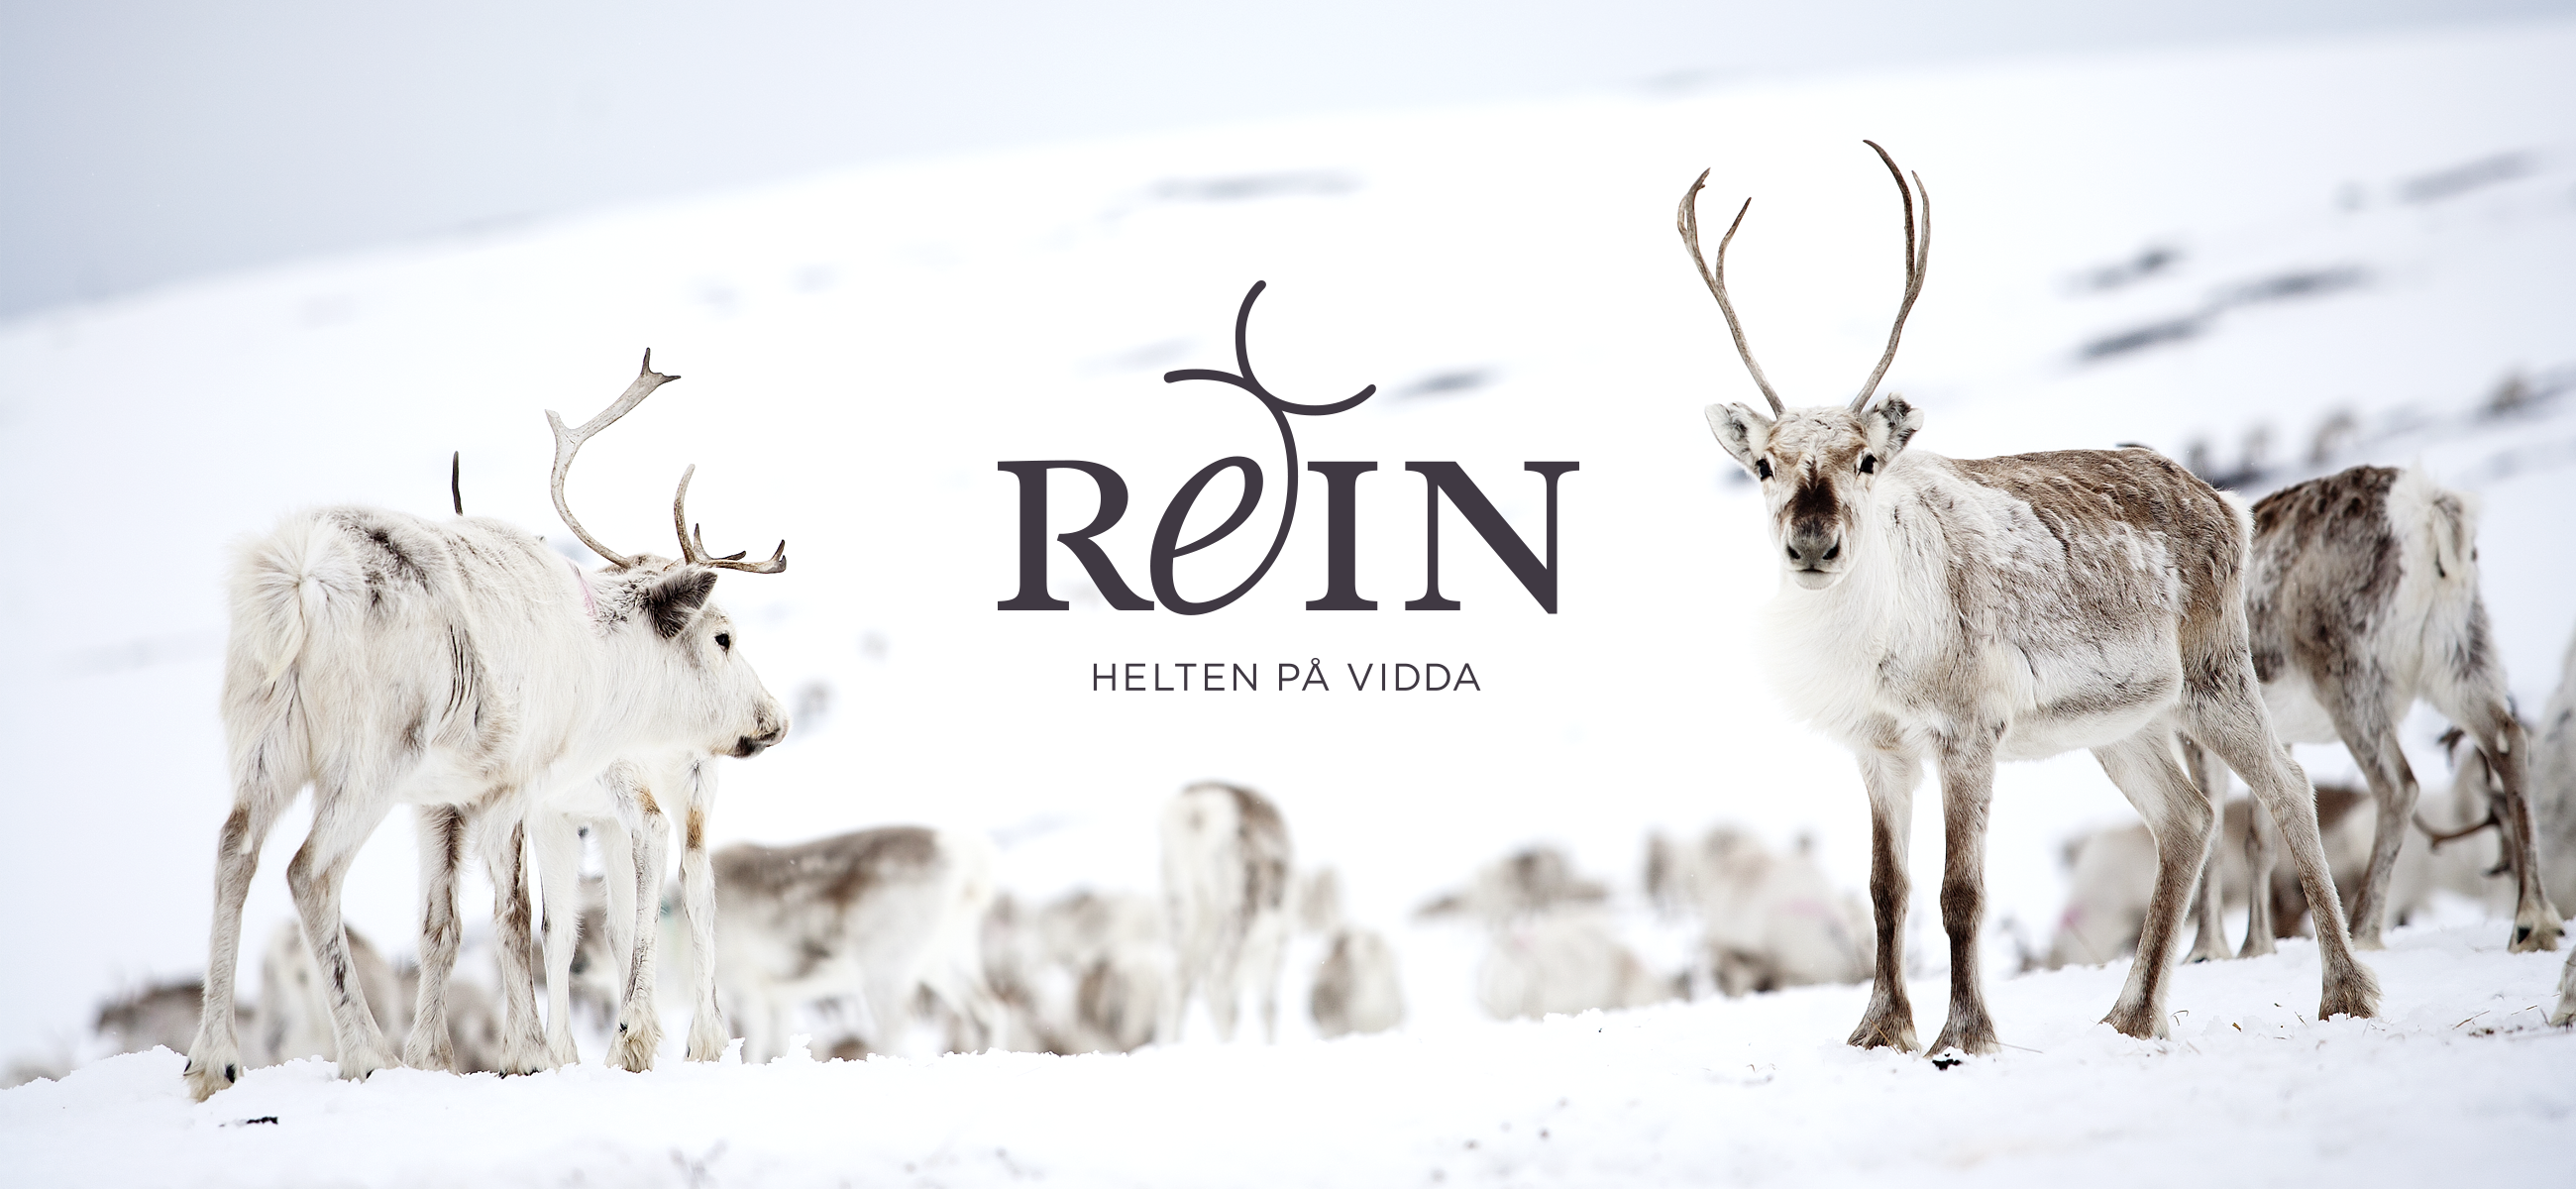 REIN logo og foto av reinsdyrflokk. Reindeer herd. Visuell identitet Visual identity.